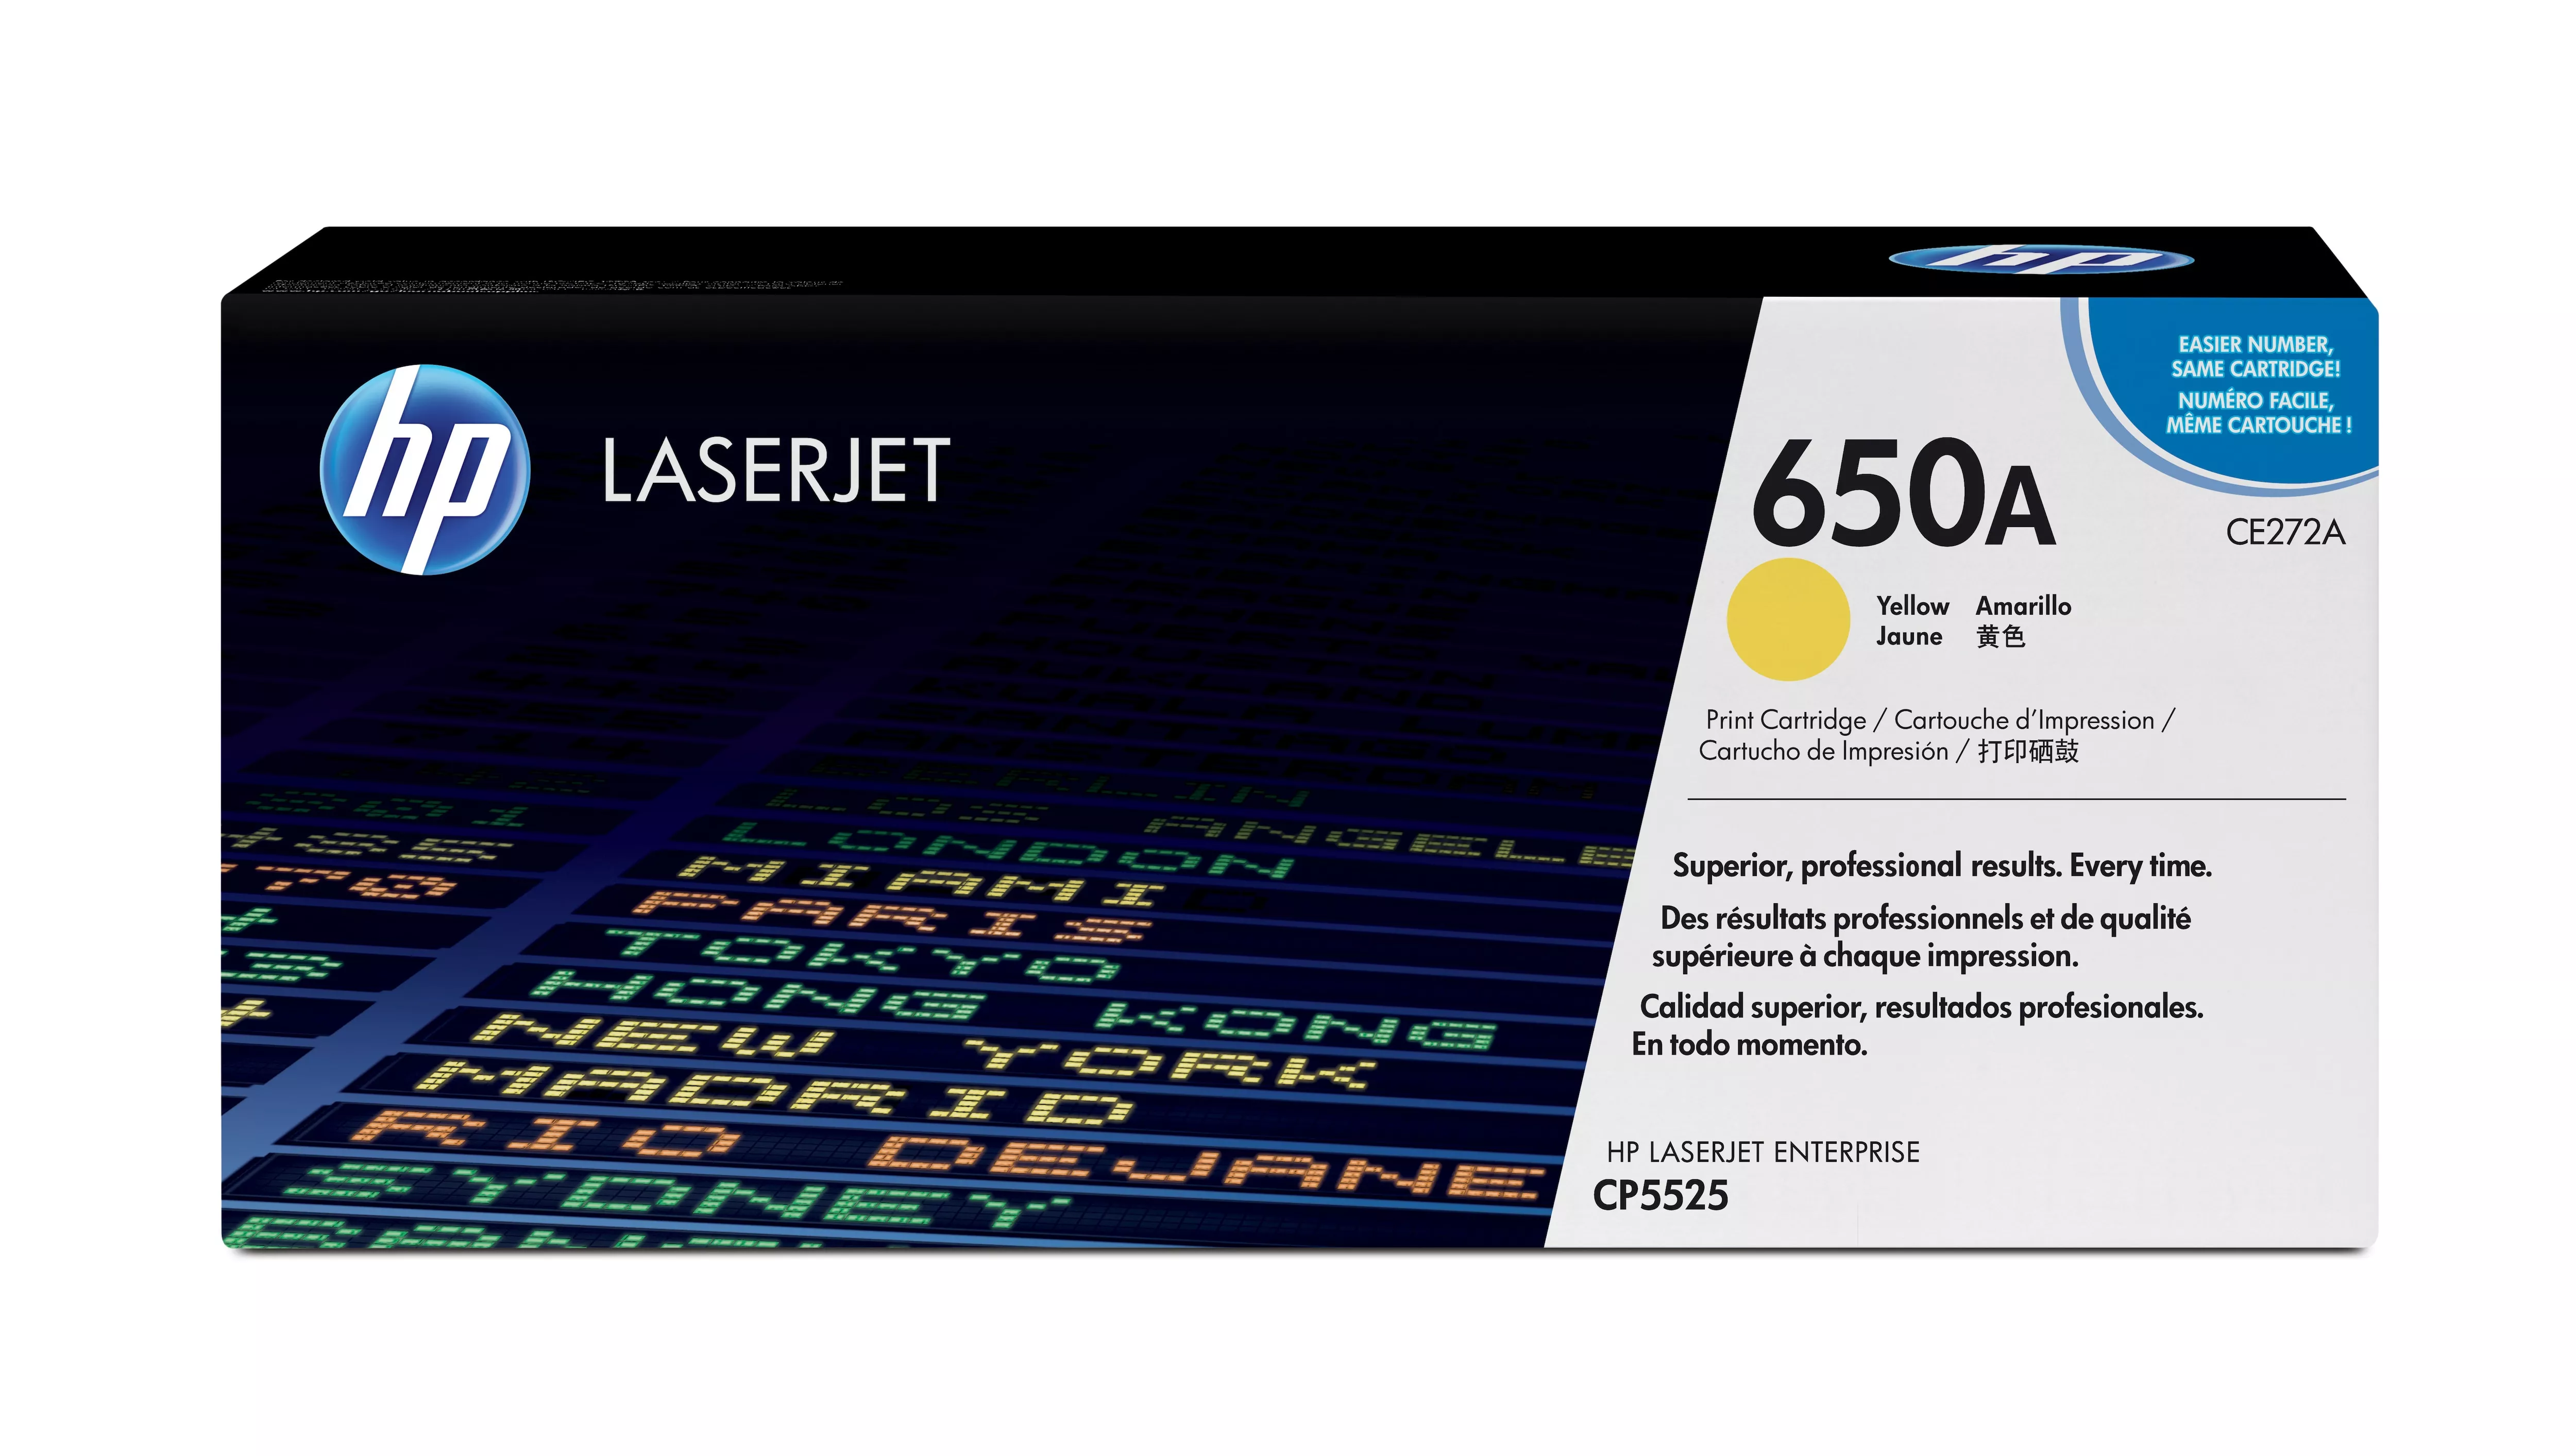 Achat HP original Colour LaserJet CE272A Toner cartridge yellow au meilleur prix